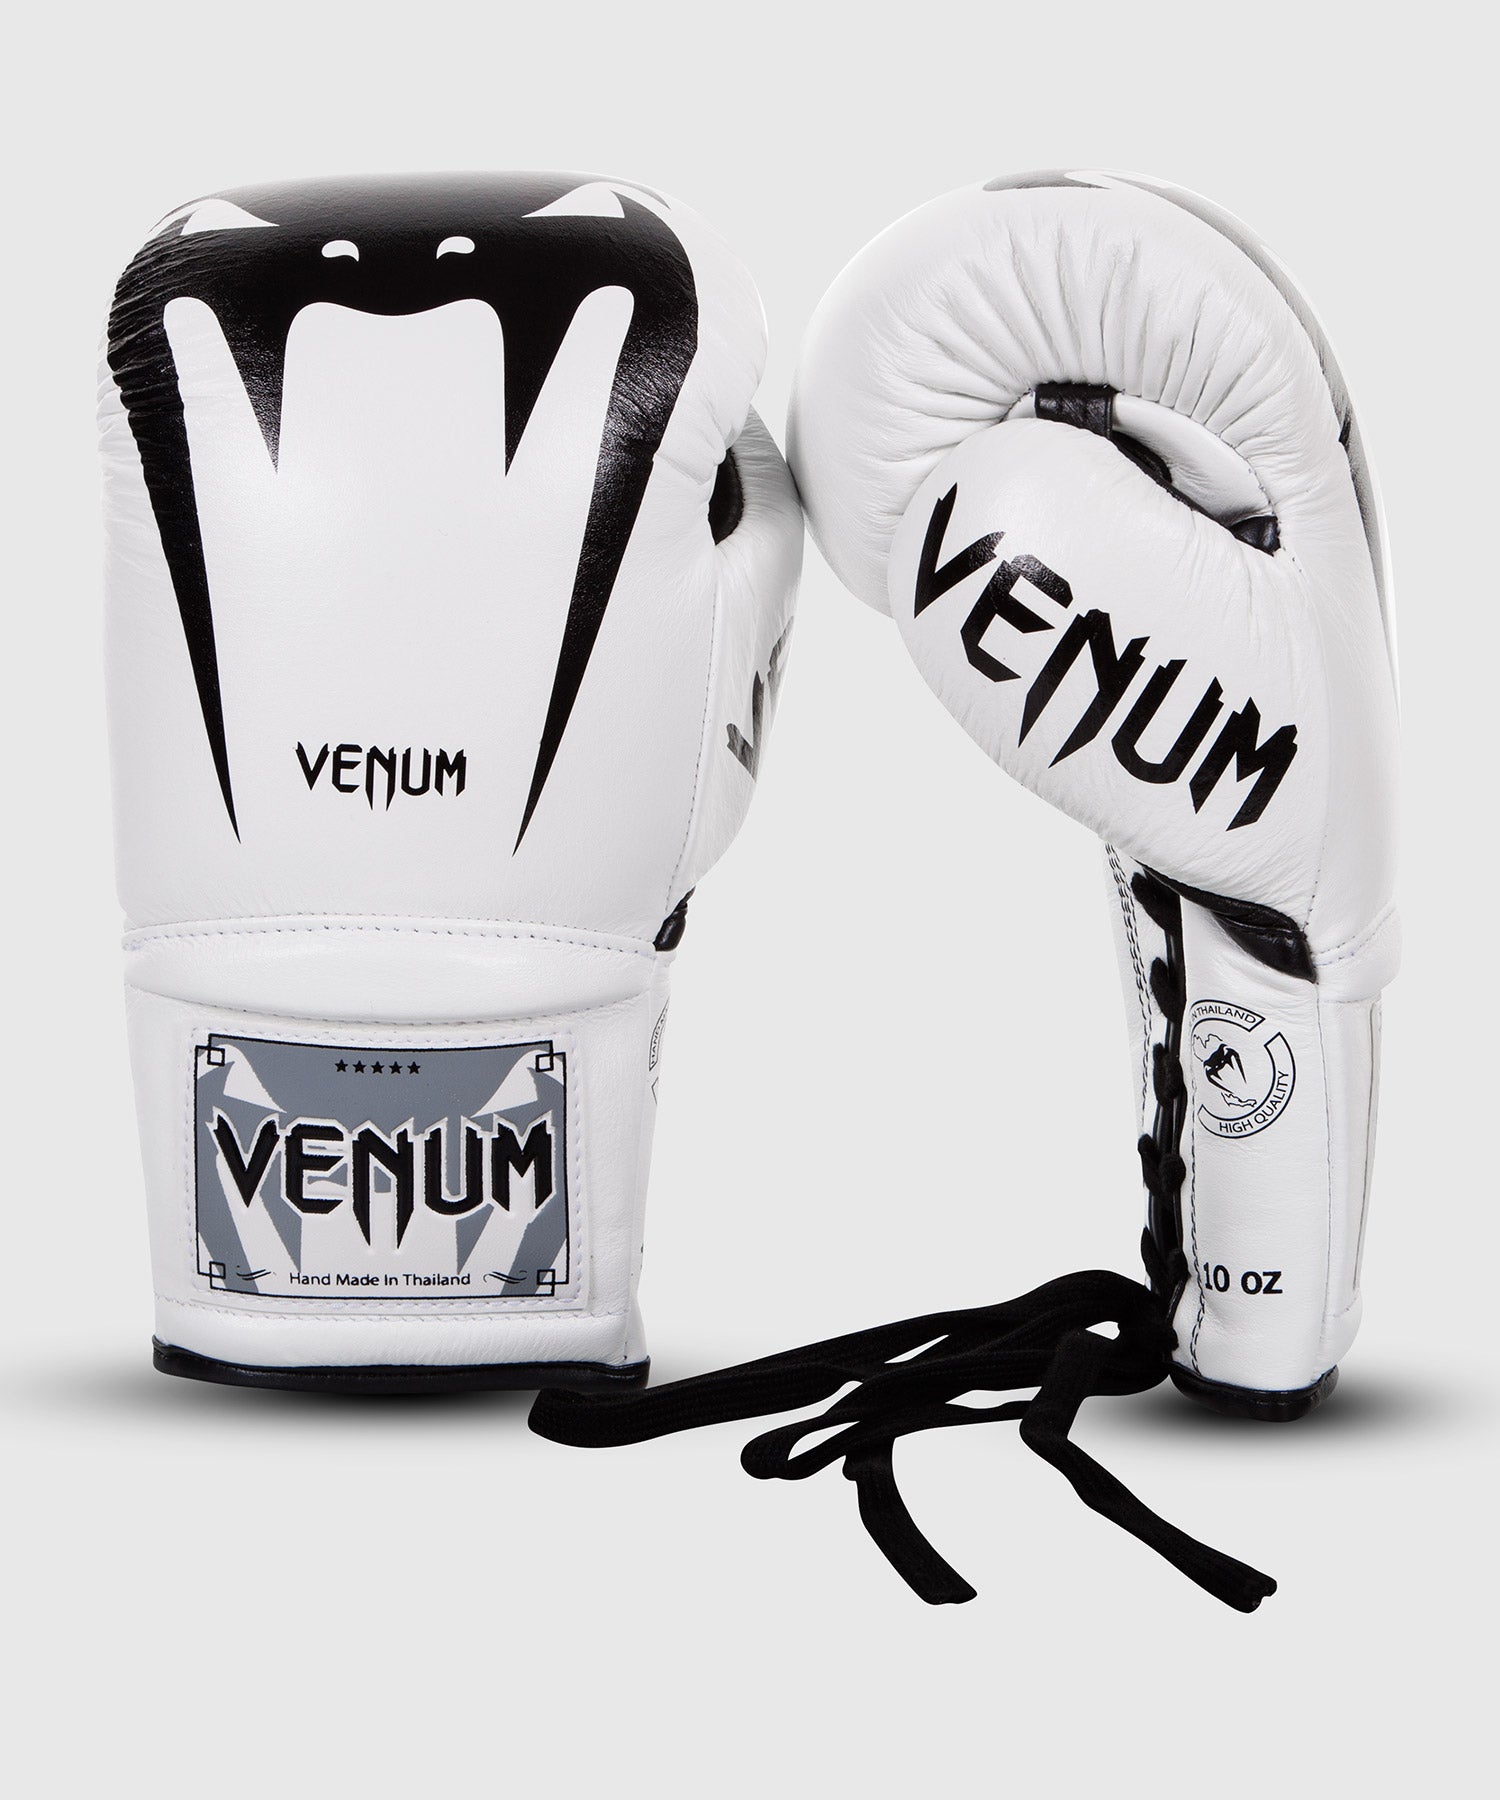 Gant de Boxe Venum en cuir de très bonne qualité shock absorption